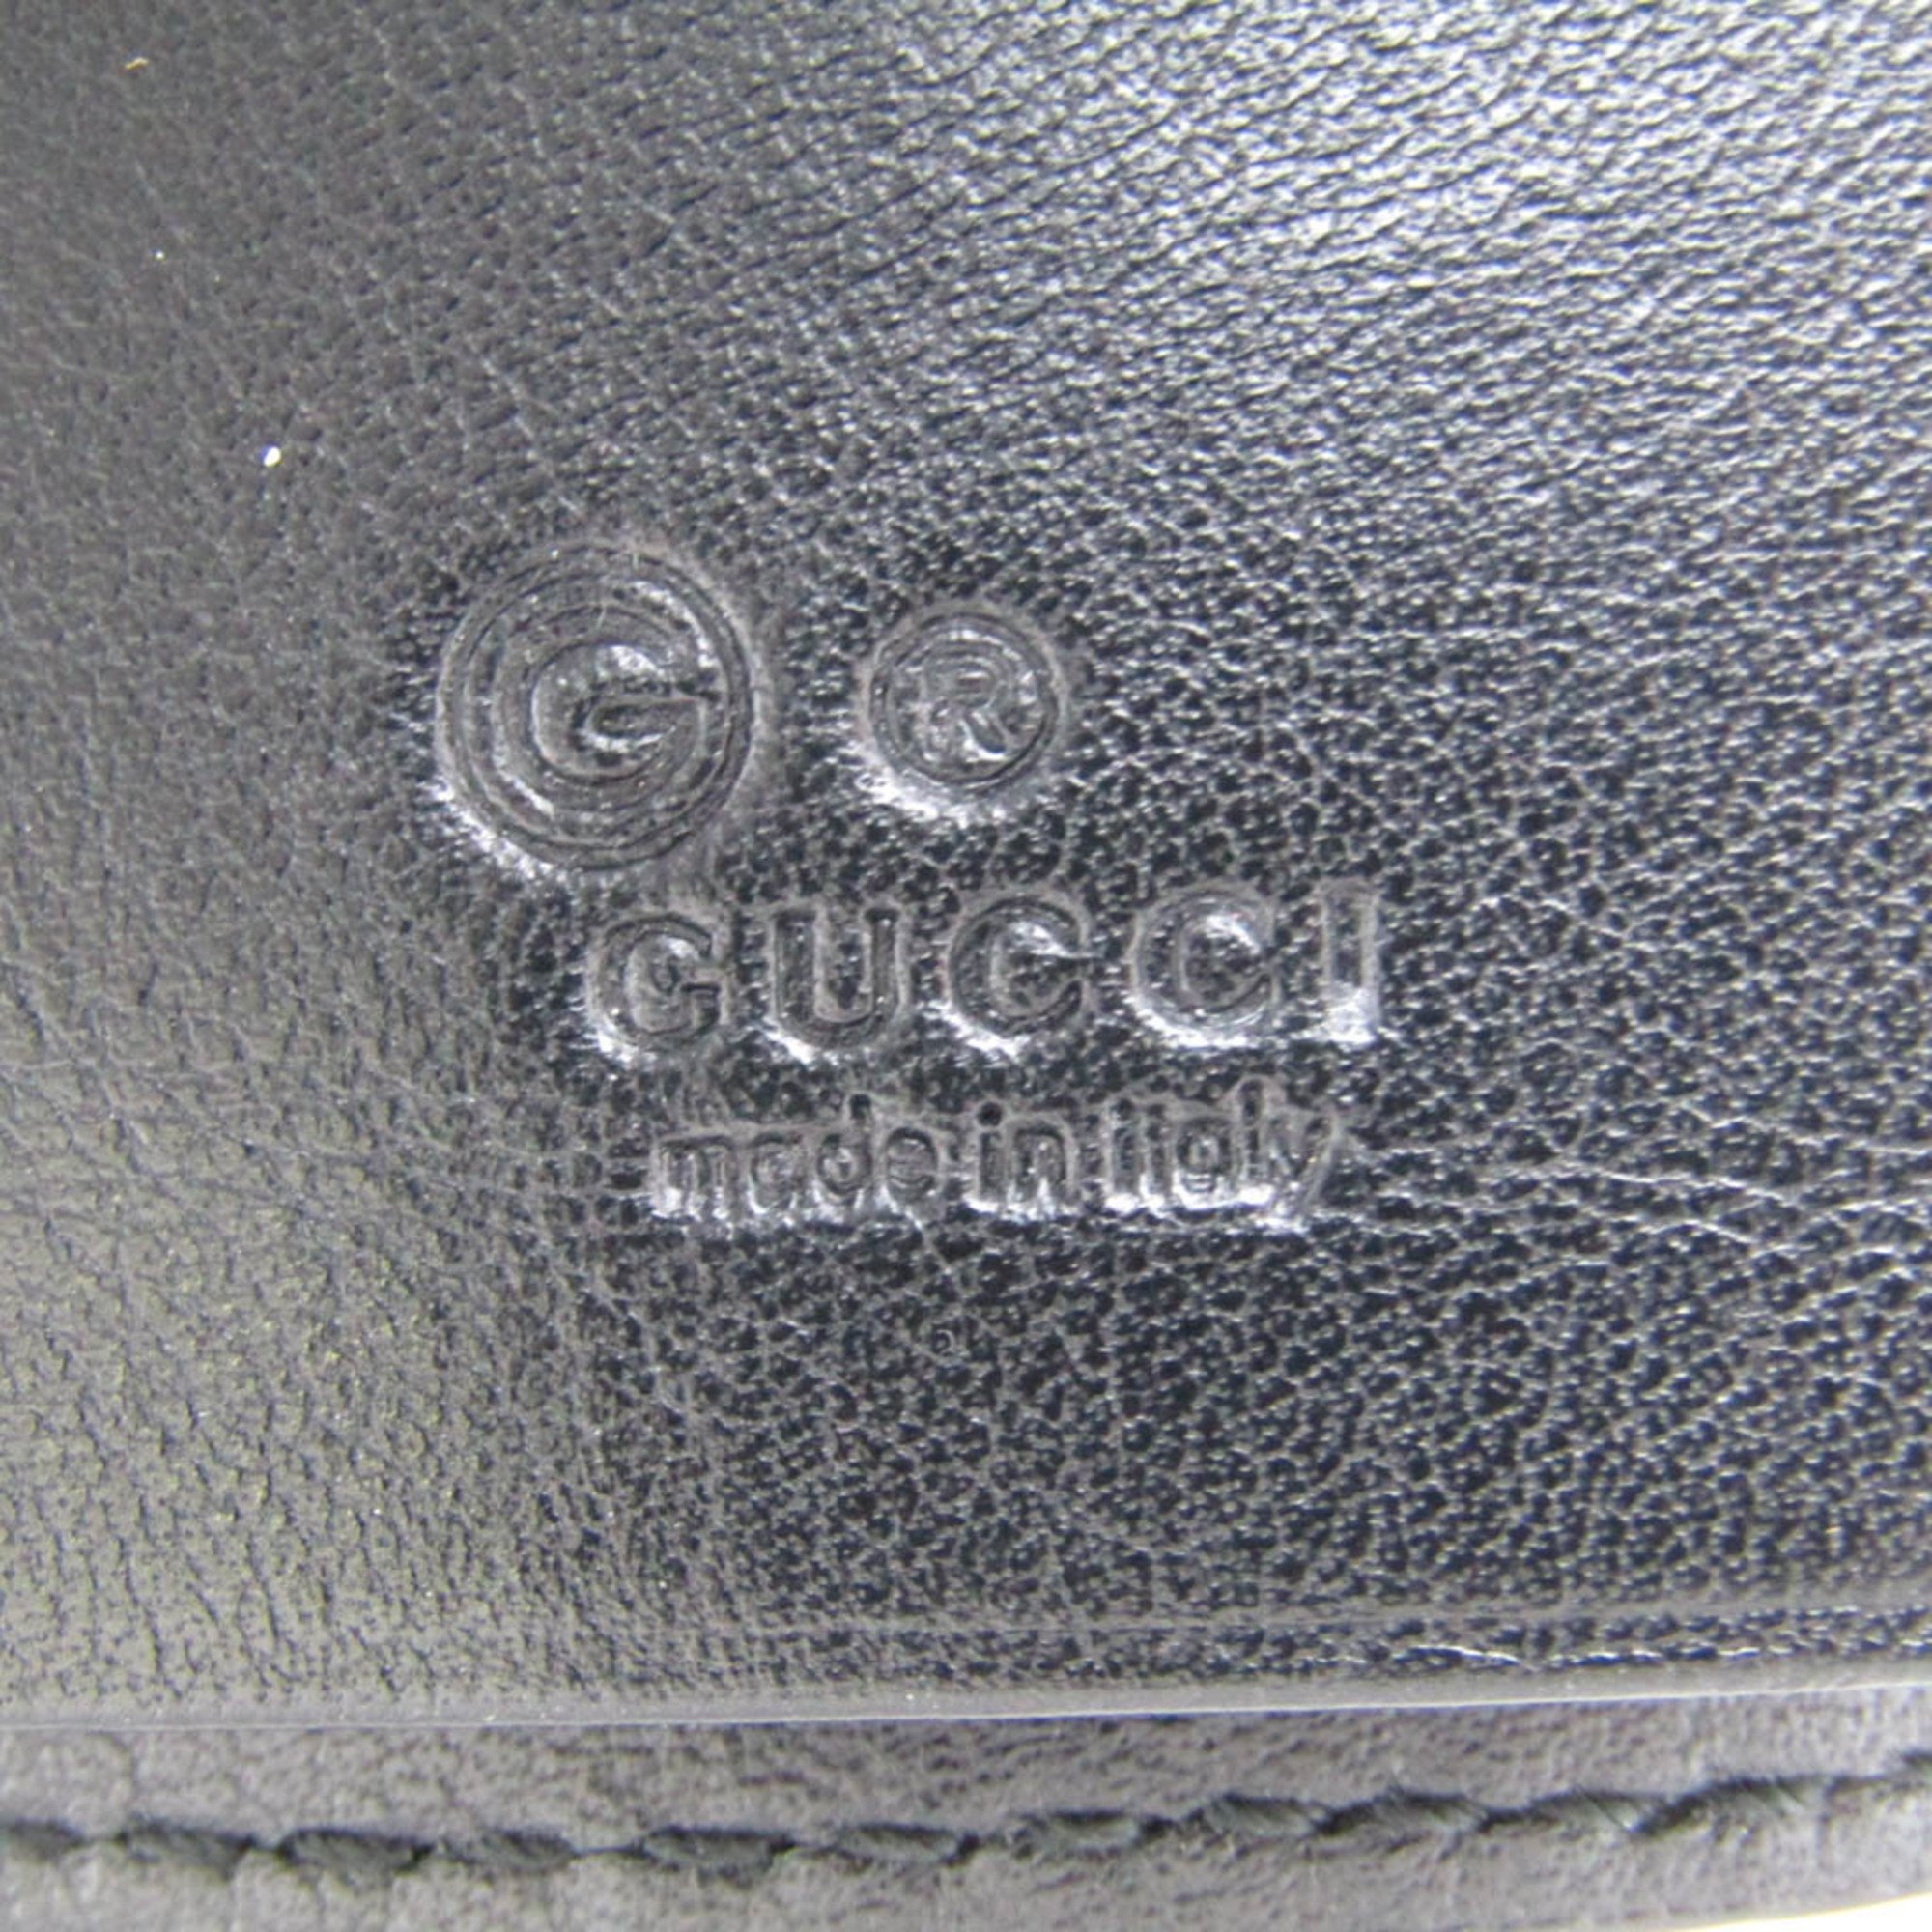 グッチ(Gucci) マイクログッチッシマ 150402 レディース,メンズ レザー キーケース ブラック